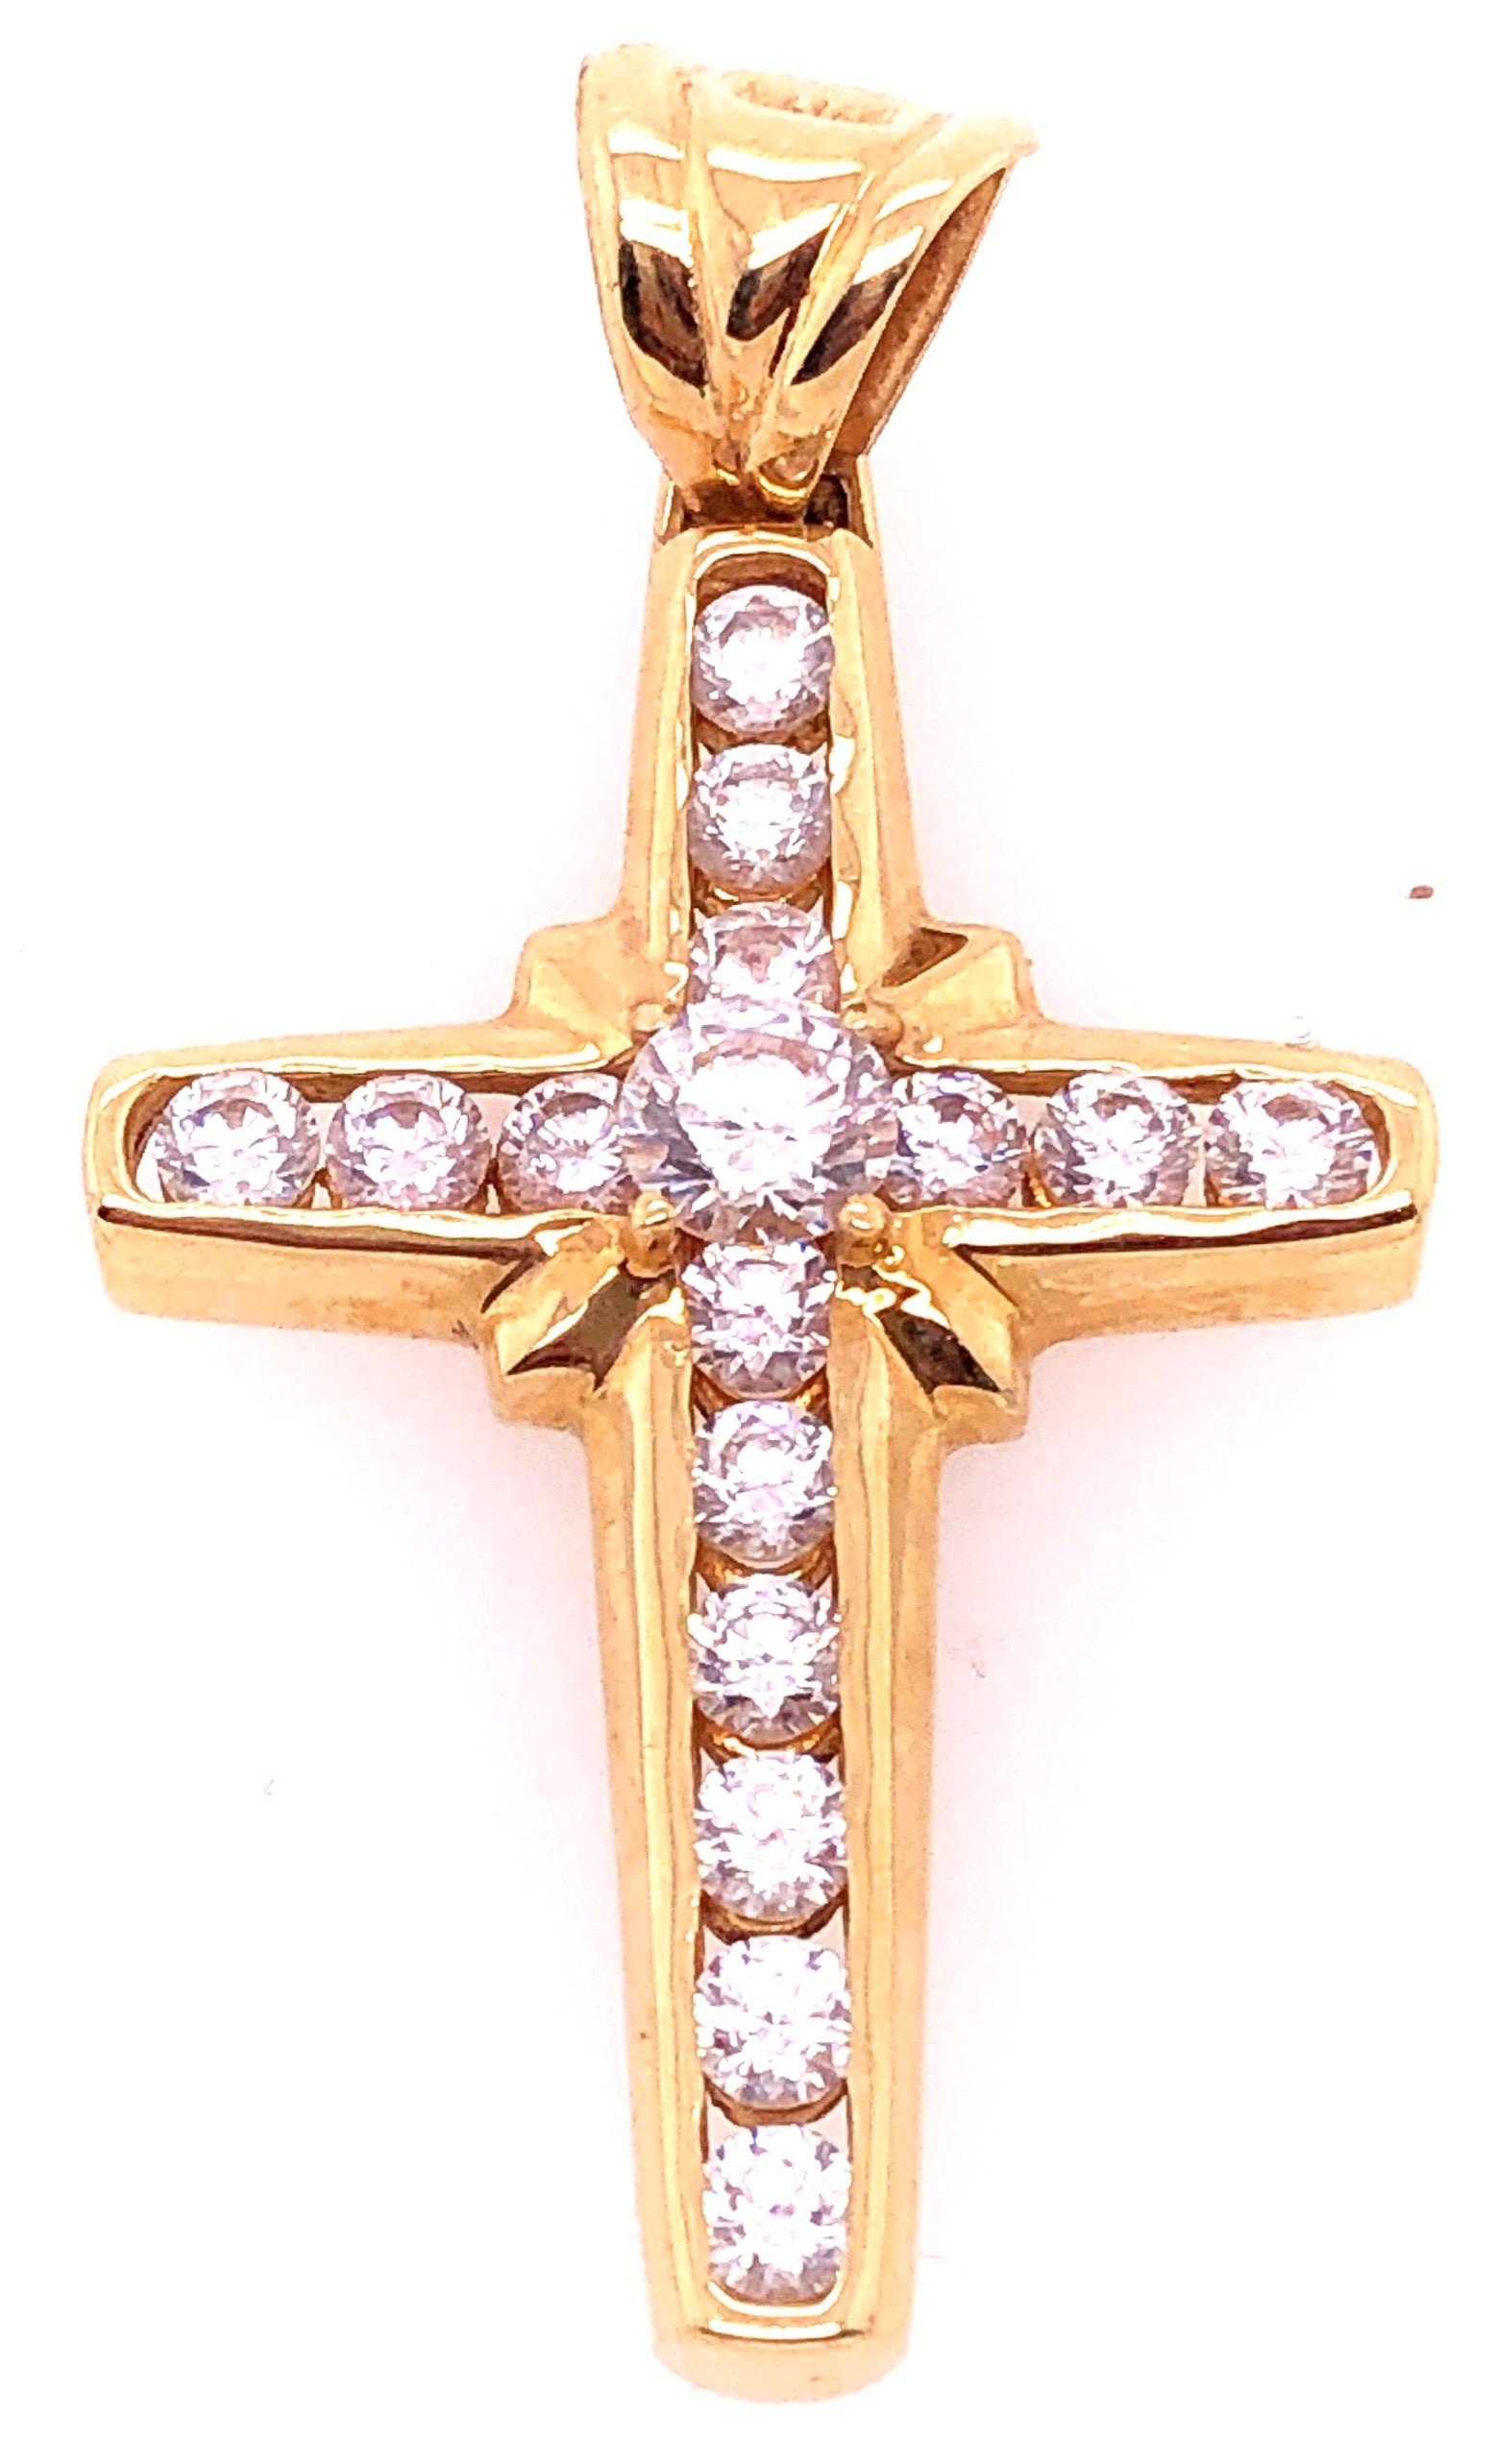 pendentif religieux / crucifix en or jaune 14 carats avec pierres semi-précieuses.
poids total de 5 grammes.
43.hauteur de 63 mm.